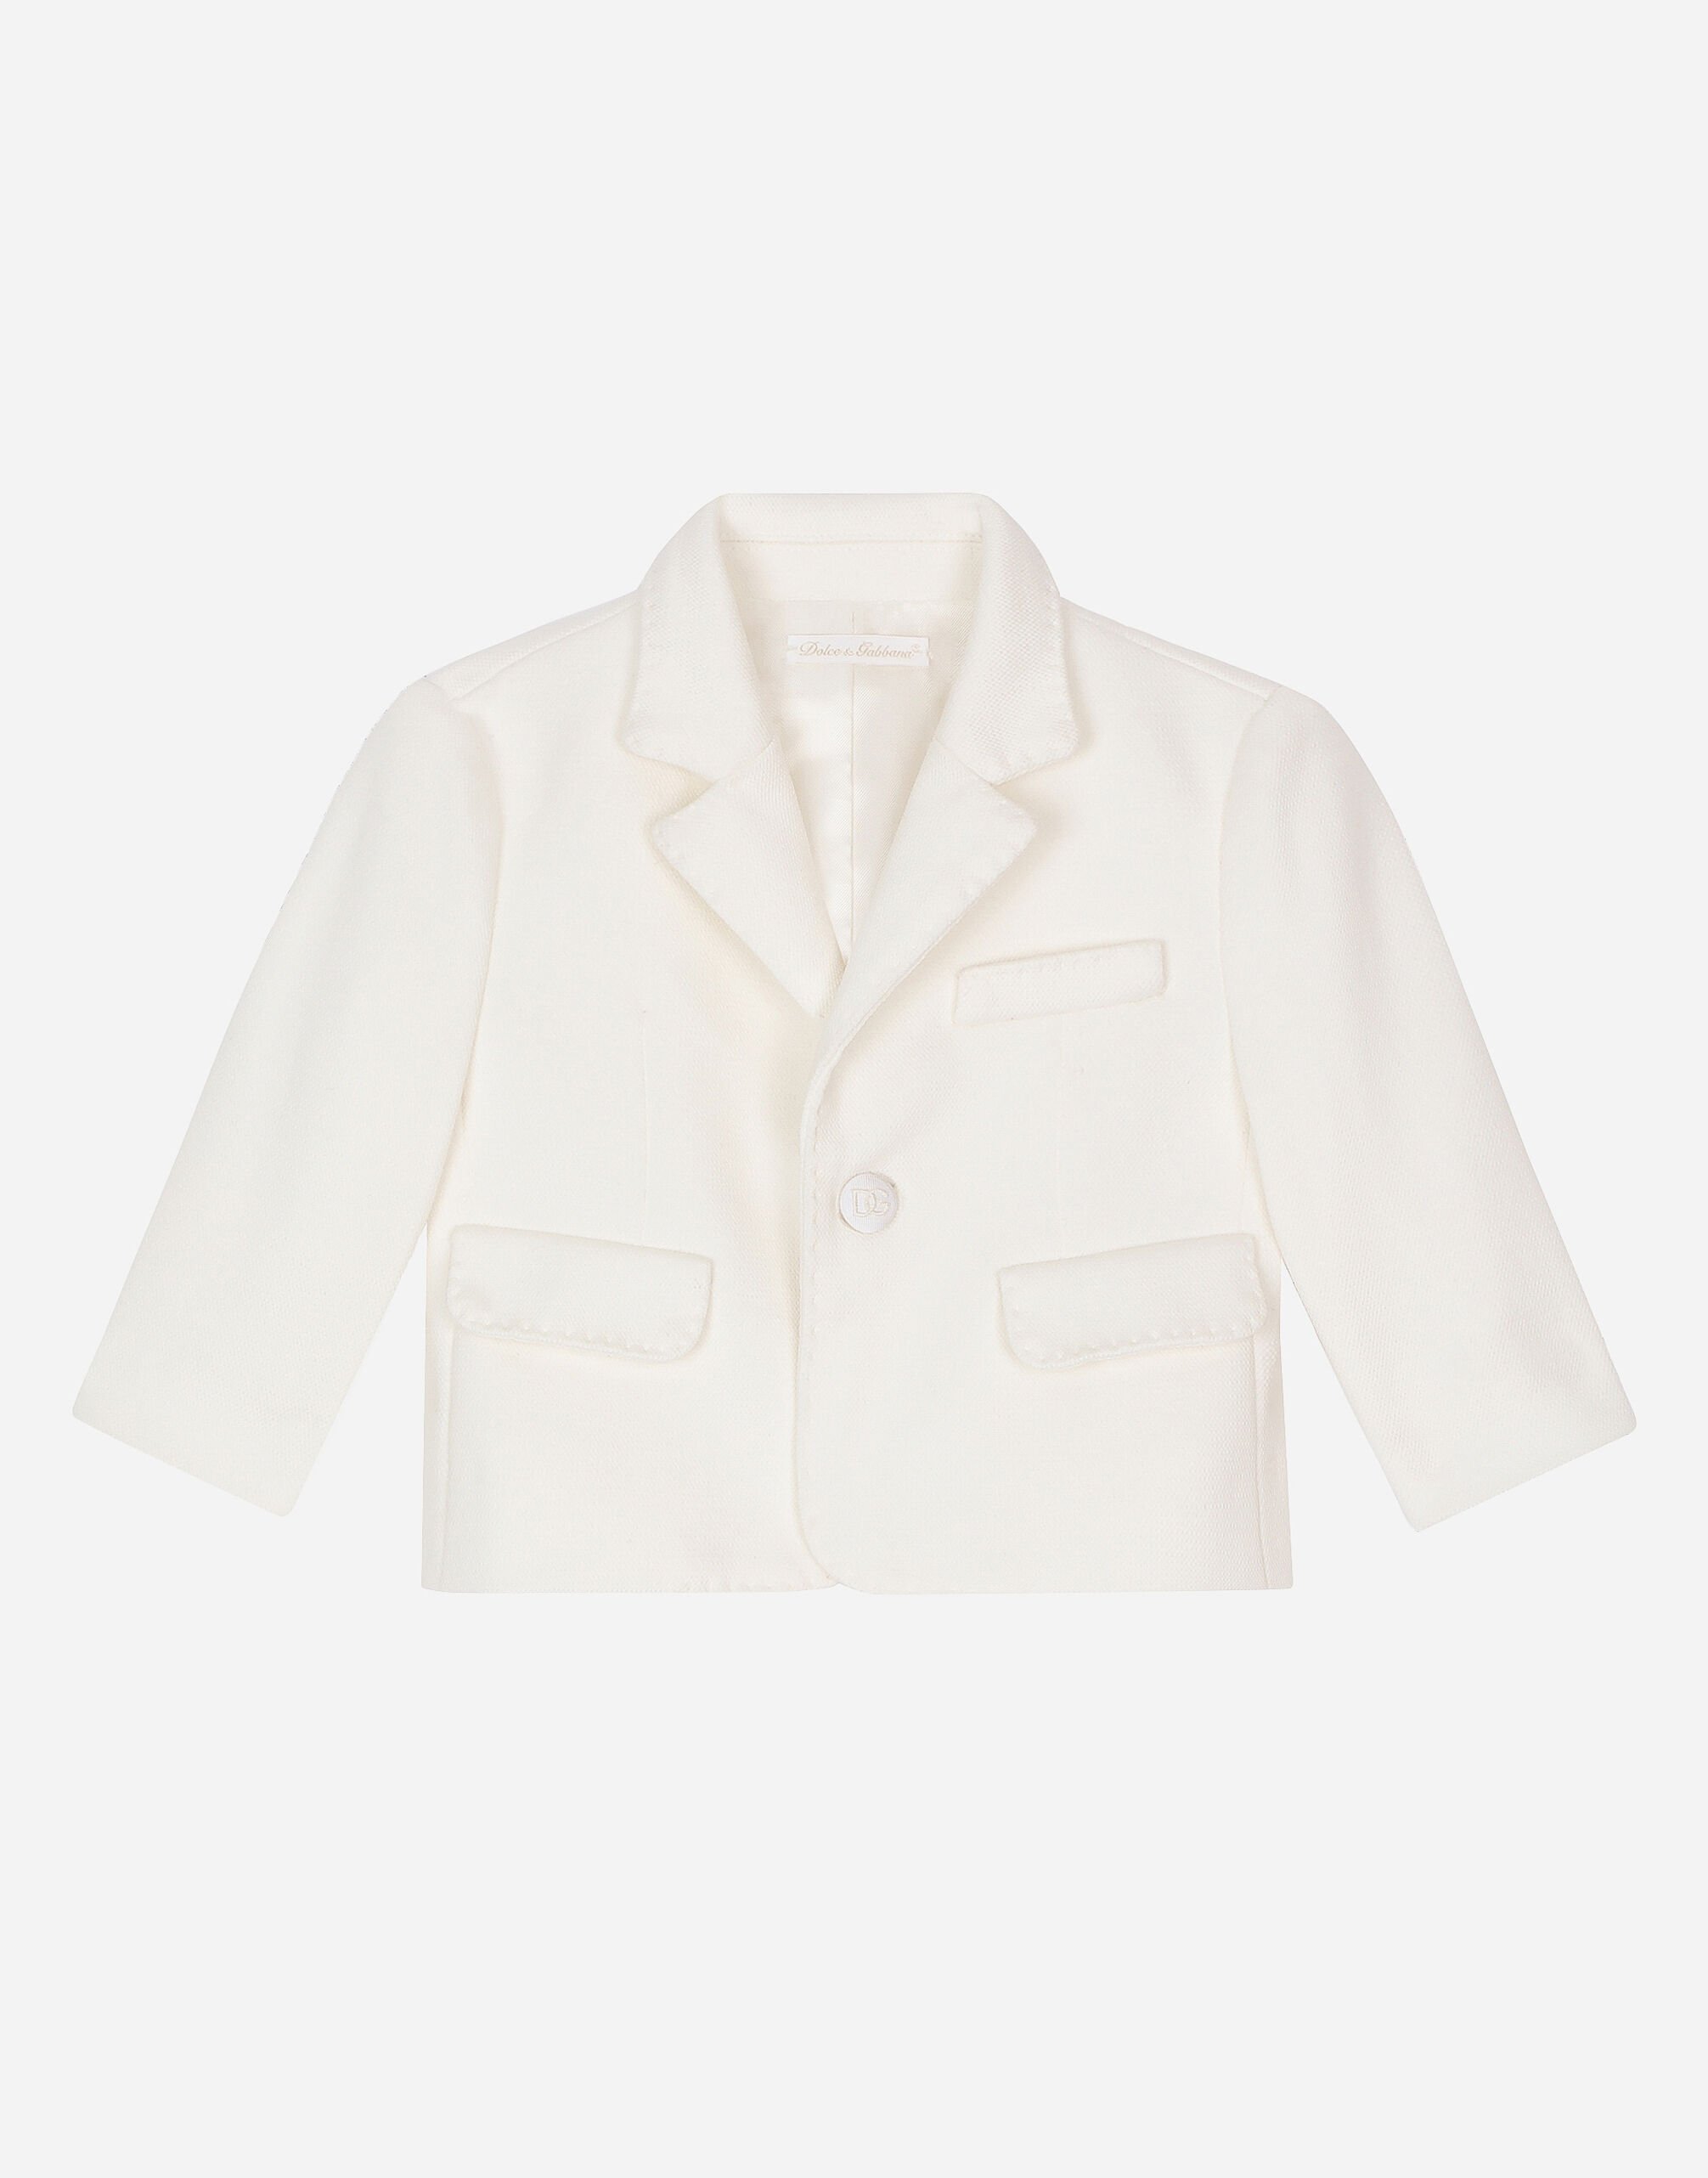 Dolce & Gabbana Классический однобортный пиджак из плотного джерси белый L0EGG2FU1L6